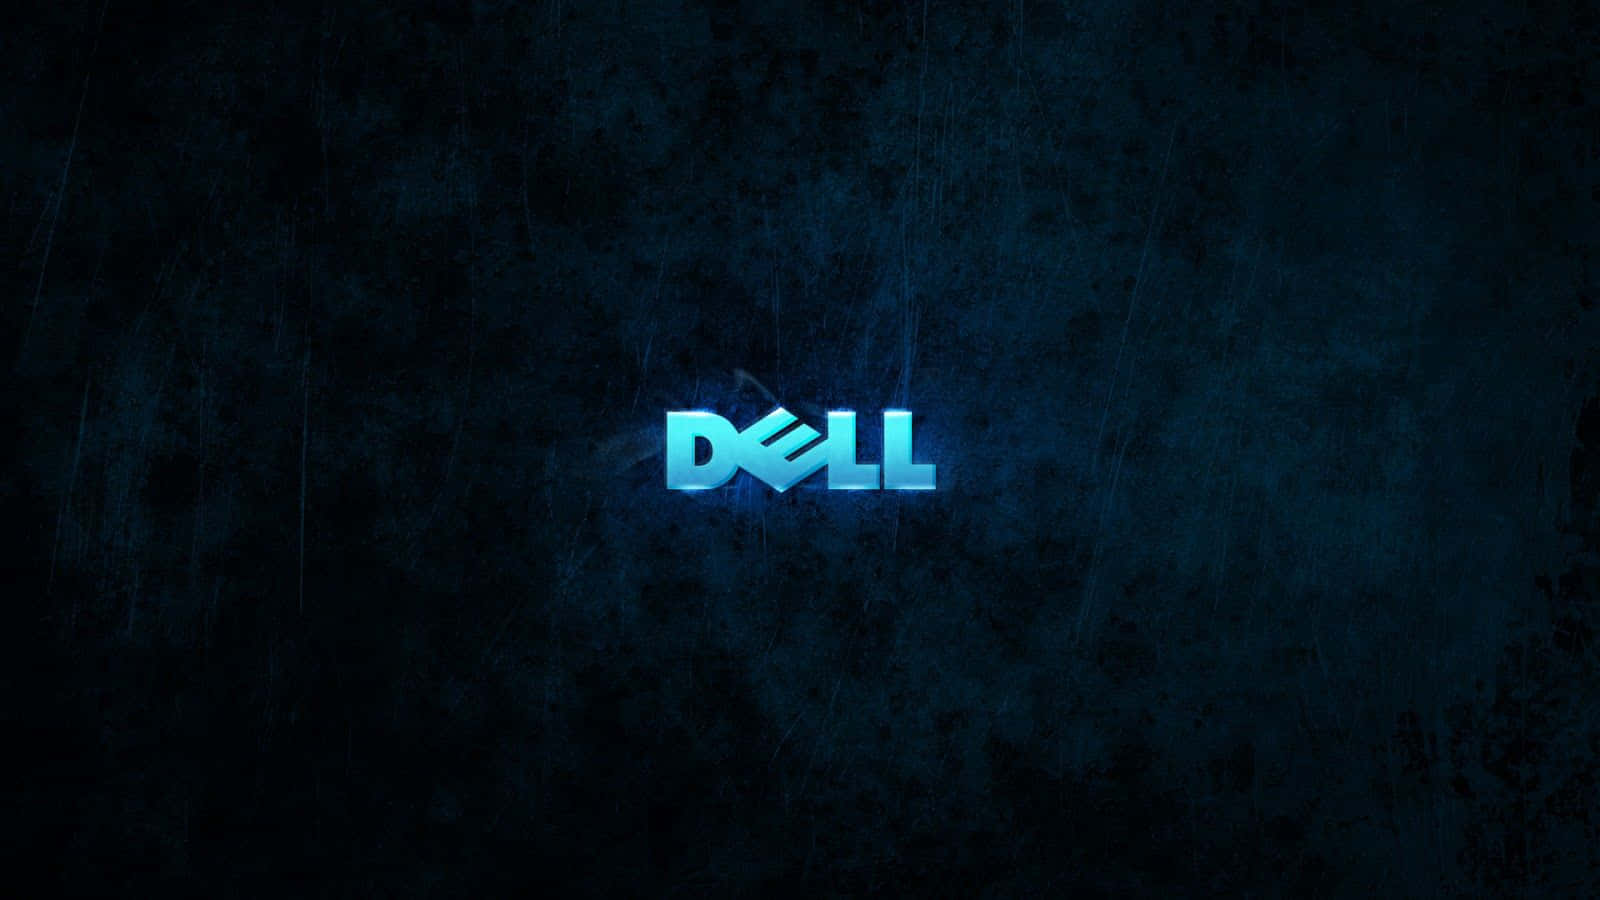 Logotipode Dell En Un Fondo Oscuro